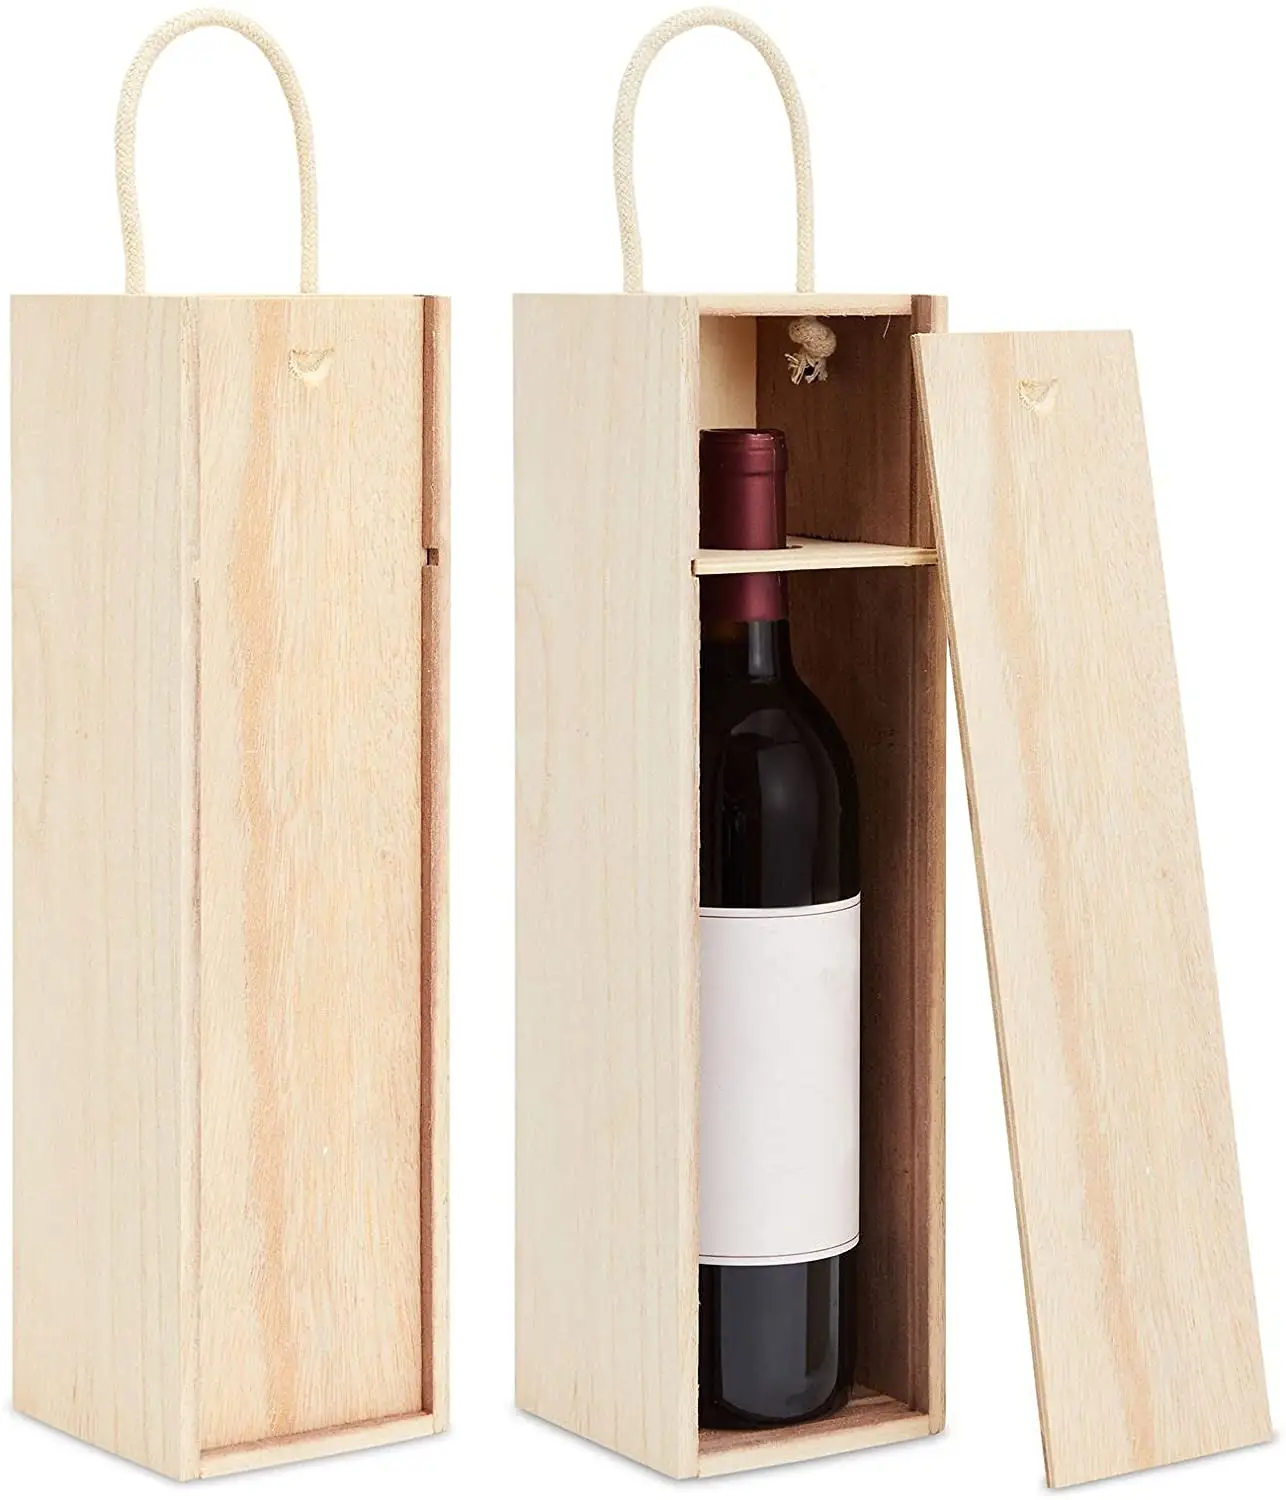 Vendita all'ingrosso di scatole di vino in legno personalizzate-scatola di legno ecologica di alta qualità per vino di lusso, tè e altre bevande